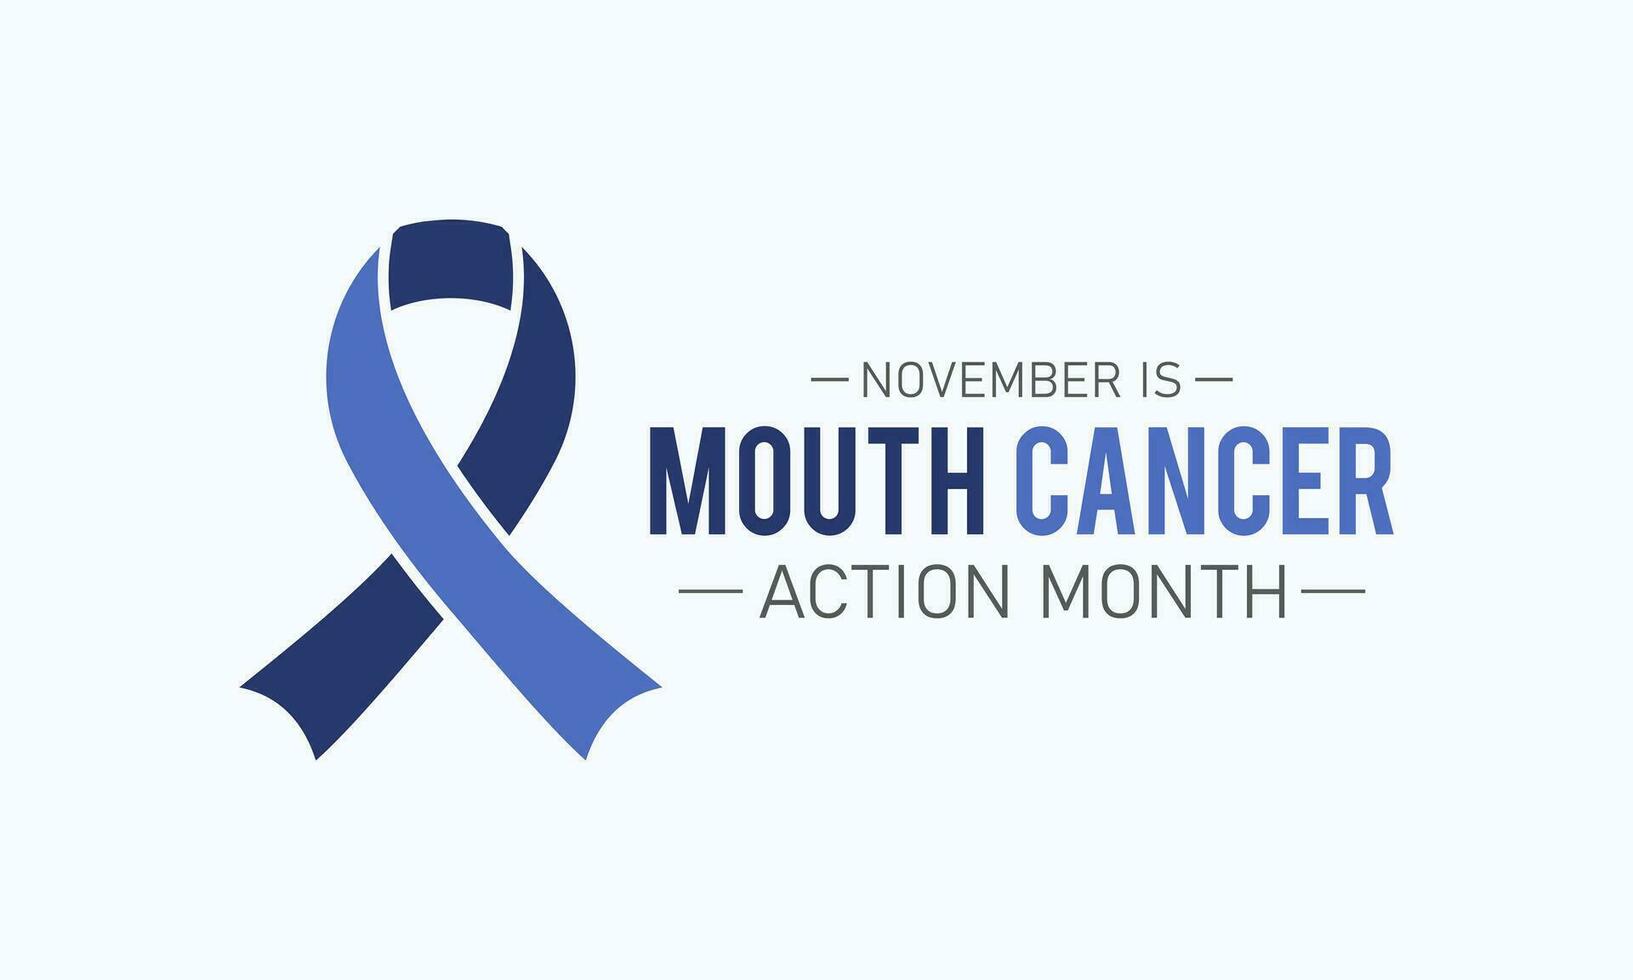 mun cancer verkan månad är observerats varje år i november. november är mun cancer verkan månad. vektor mall för baner, hälsning kort, affisch med bakgrund. vektor illustration.